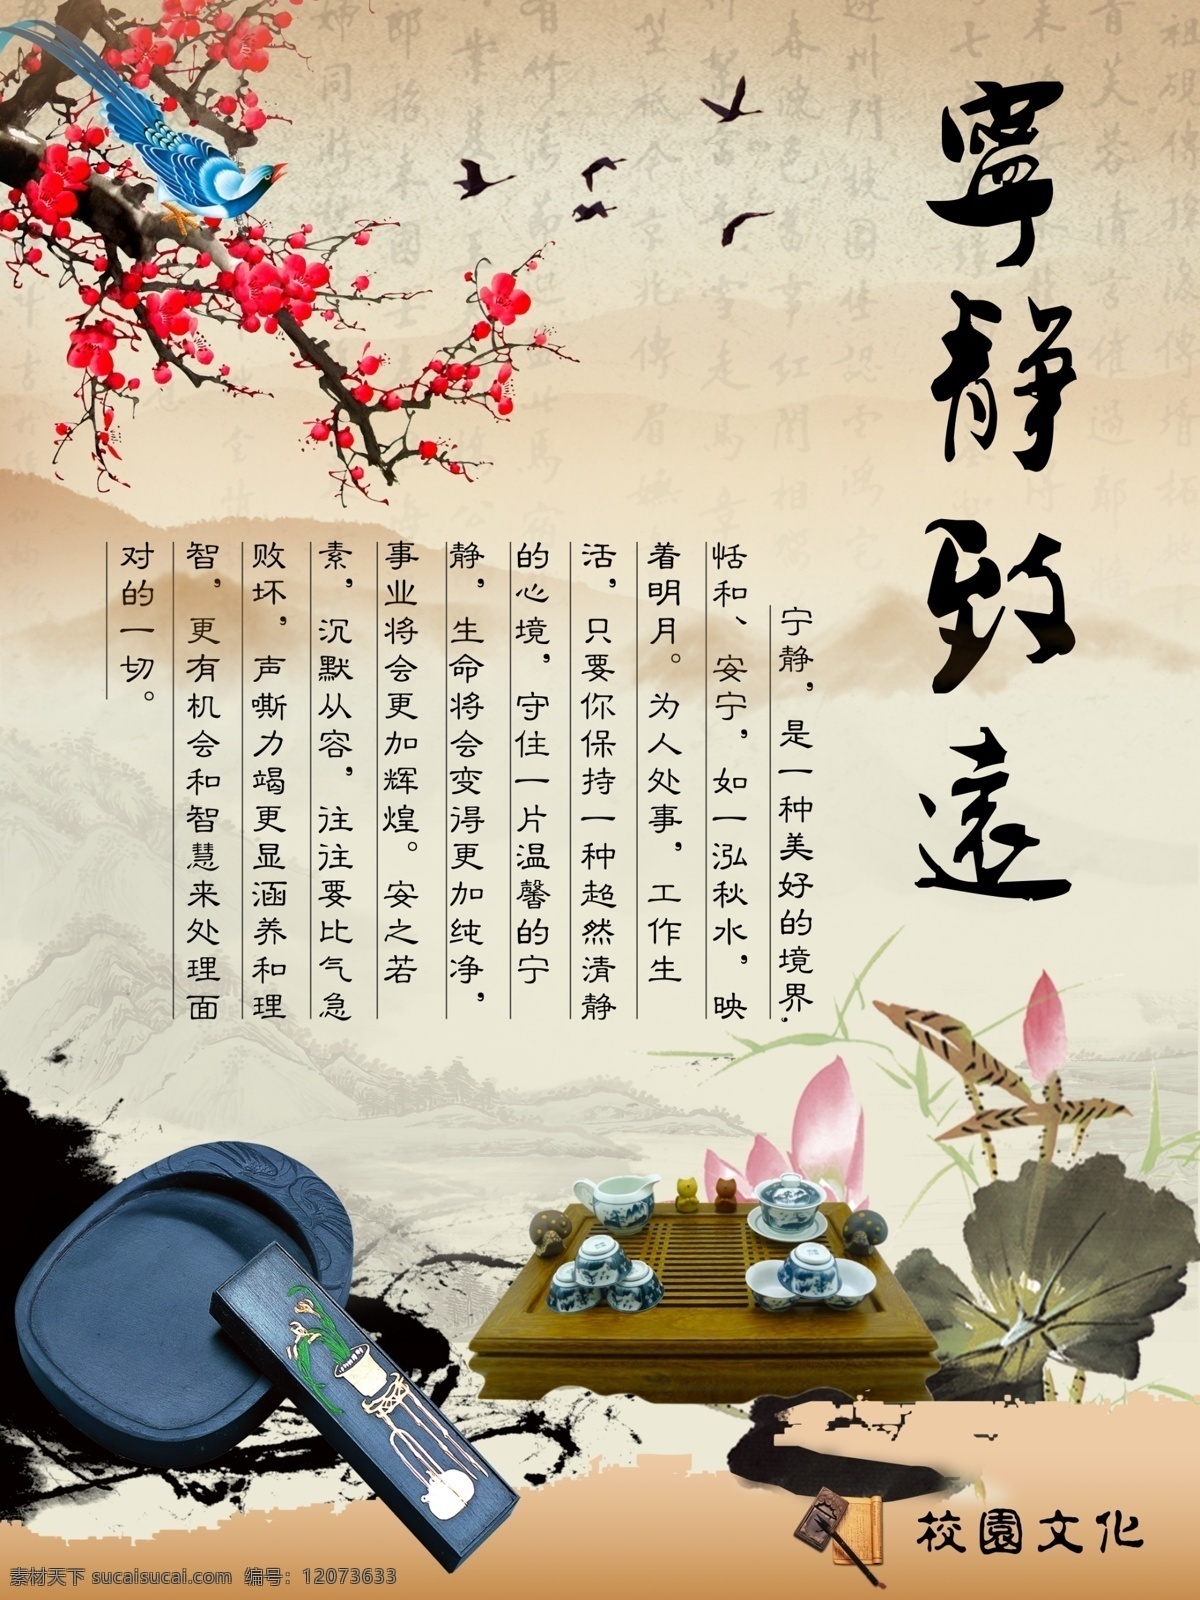 宁静致远 励志 展板 模版下载 励志展板 校园文化 砚台 茶具 梅花 喜鹊 中国风 展板模板